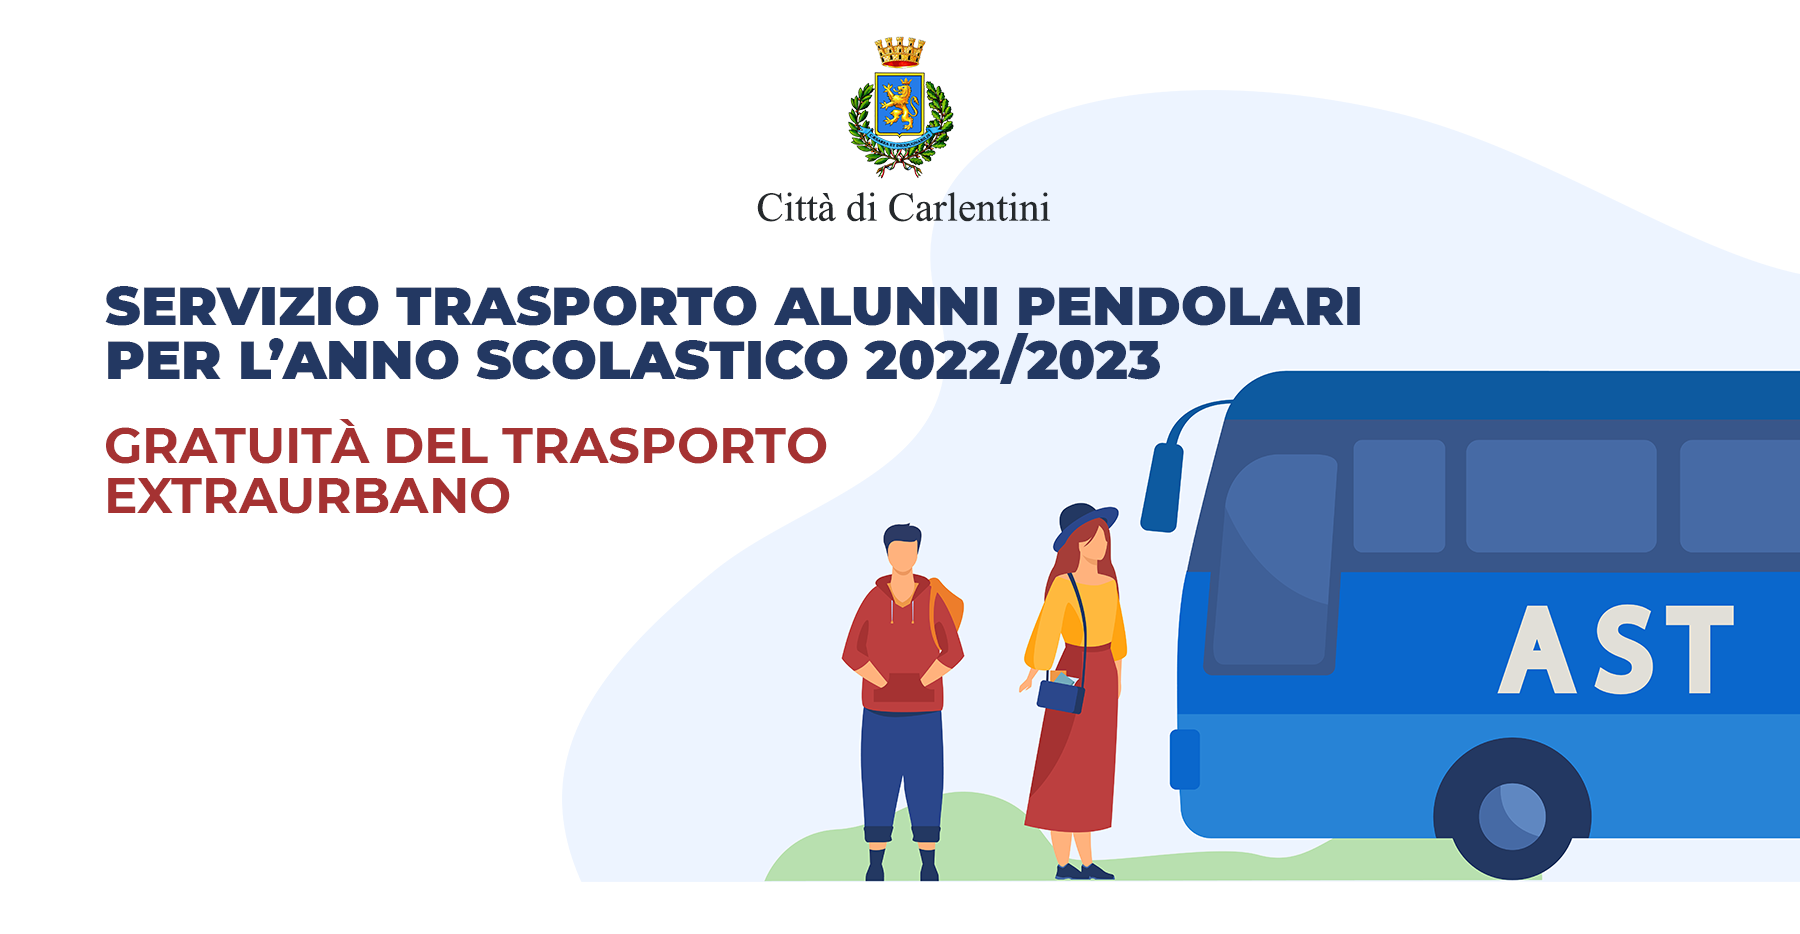 Trasporto extraurbano per studenti pendolari: gratuità del servizio per l’anno 2022/2023